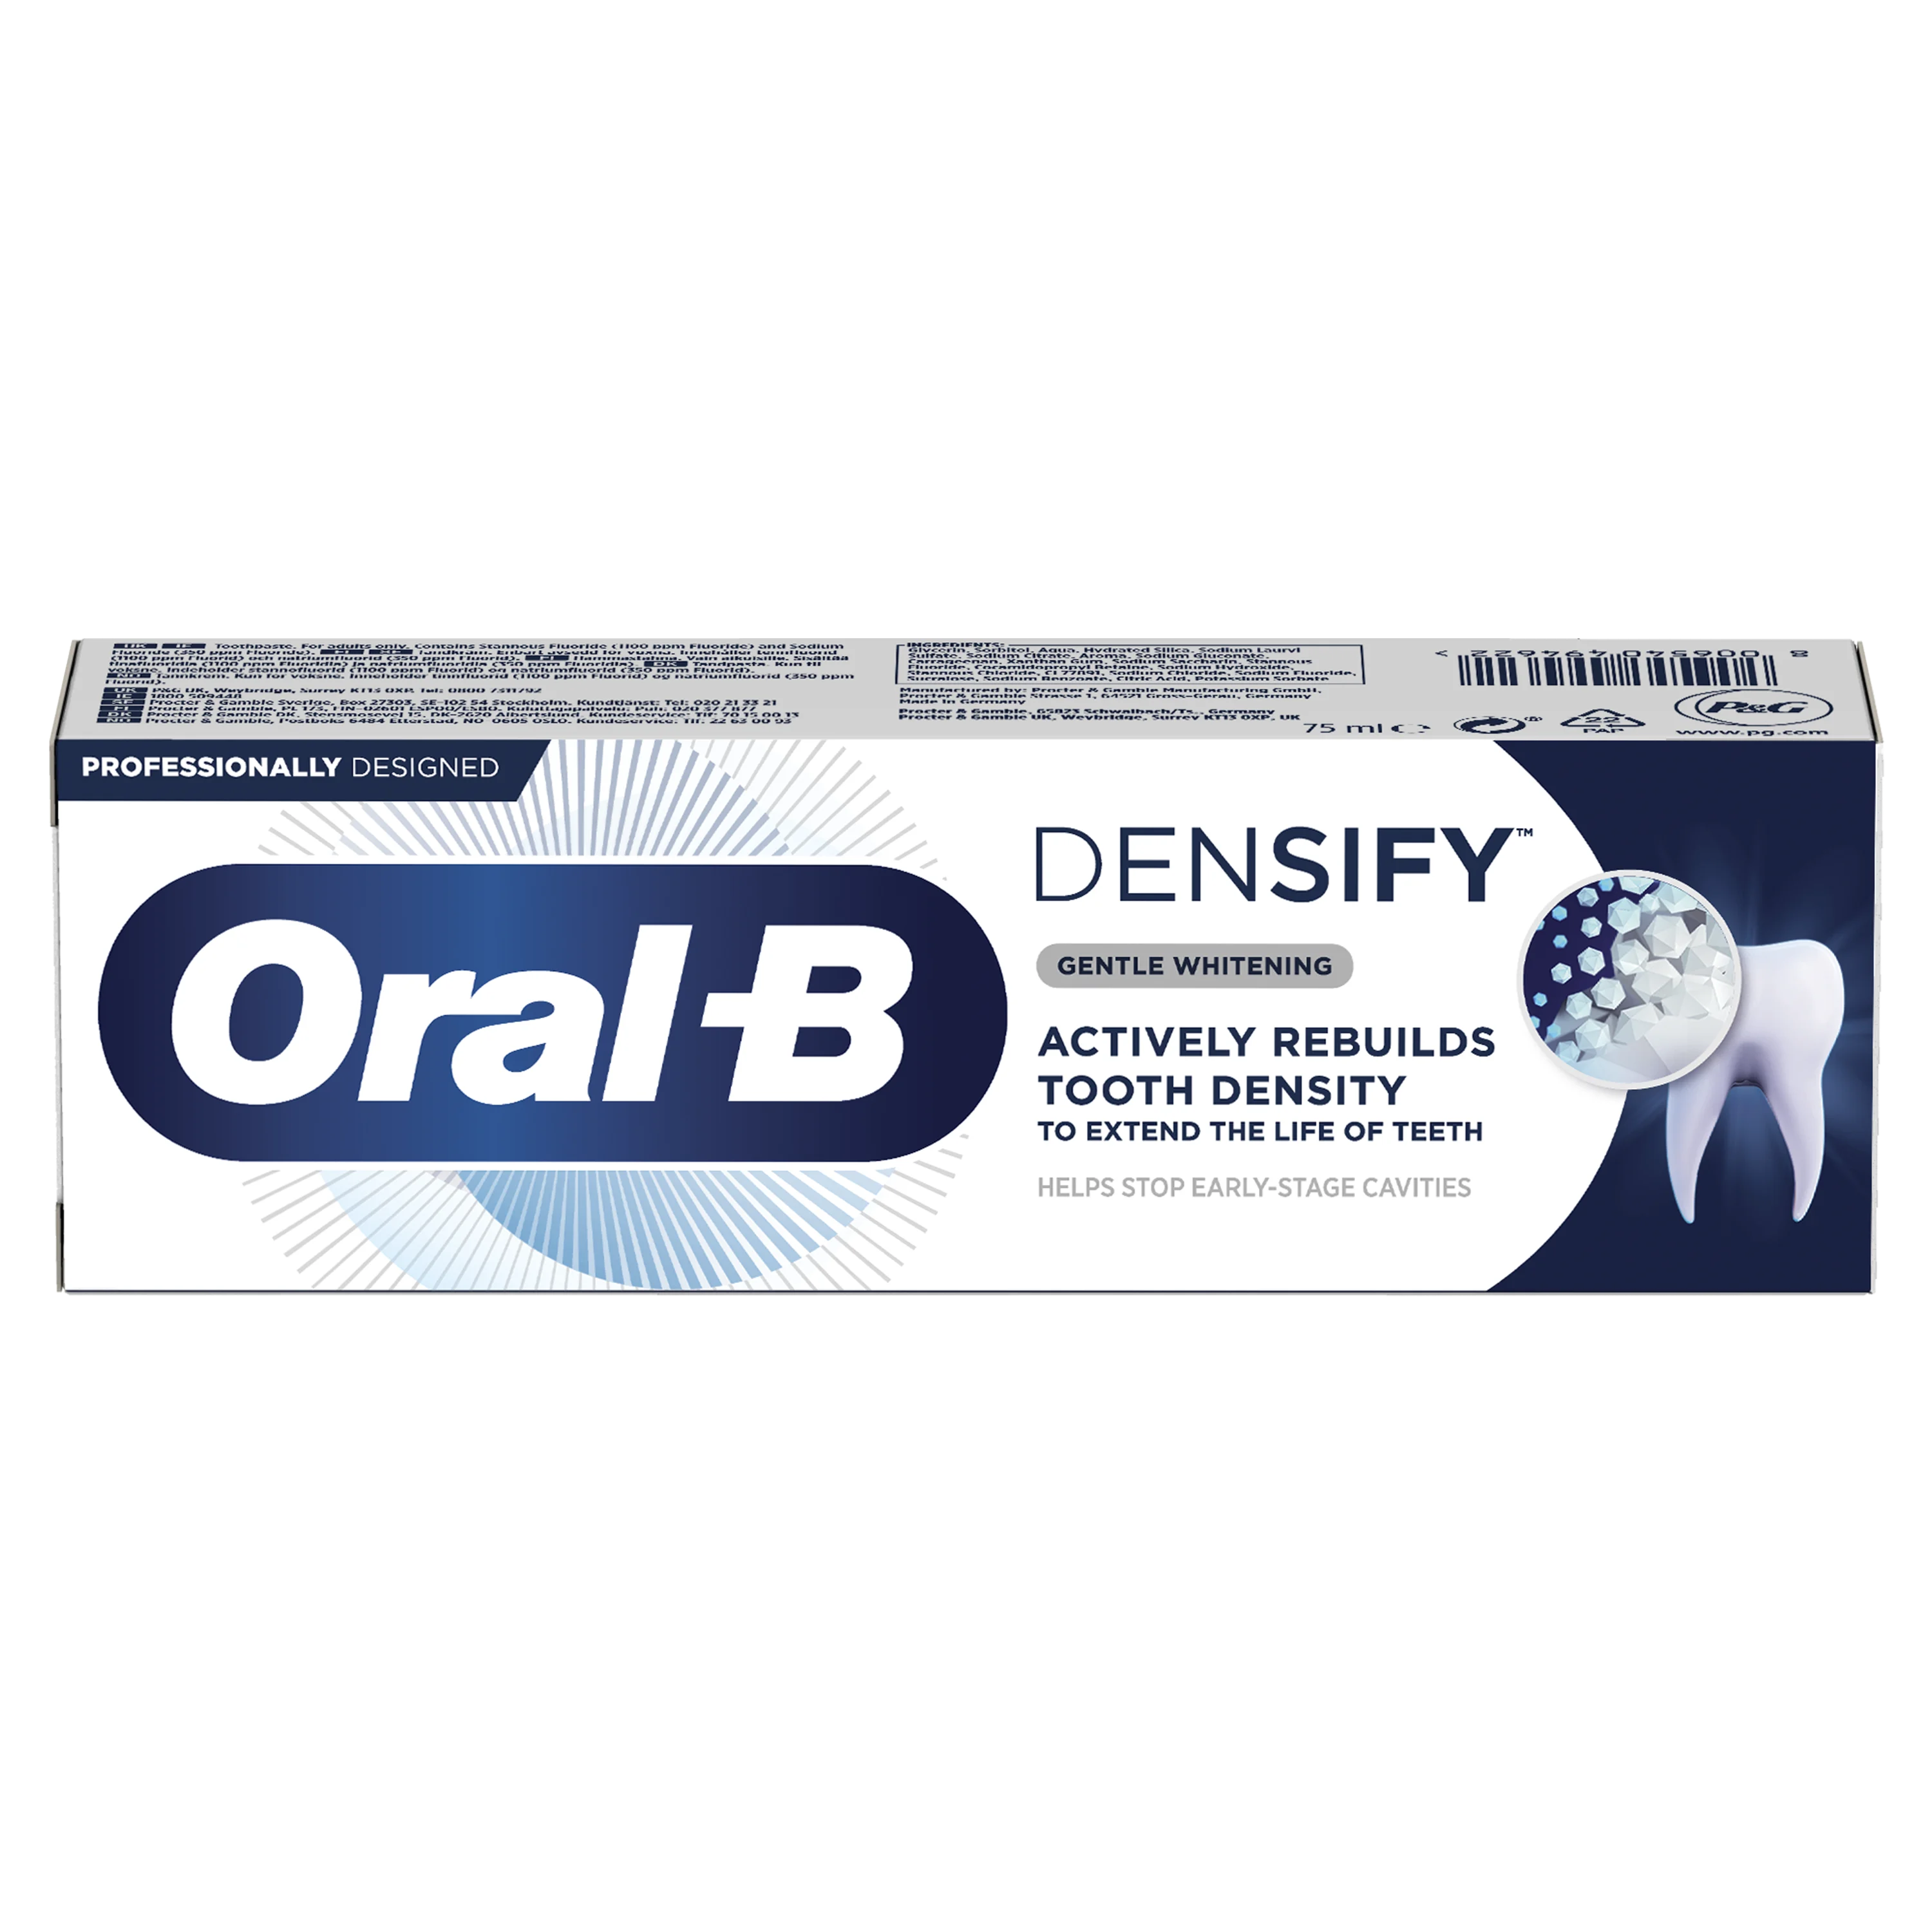 Oral-B Densify Gentle Whitening Tandpasta undefined